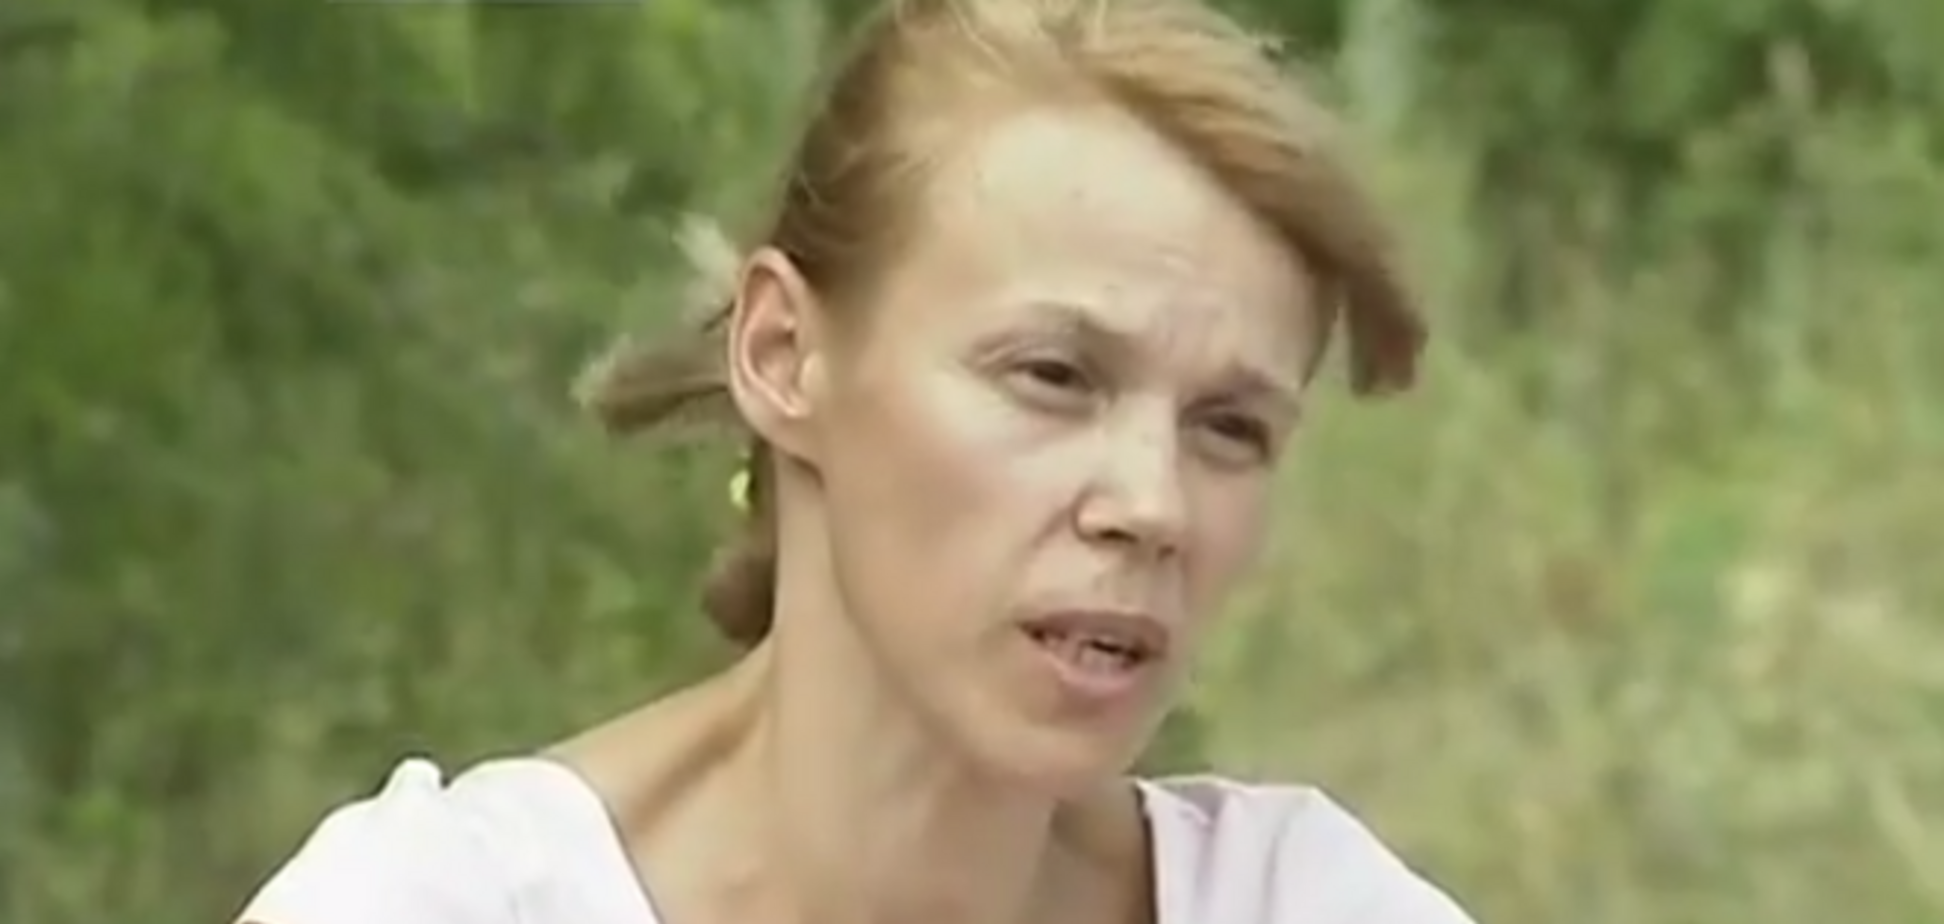 Біженка із Слов'янська, яка розповіла про 'звірства' Нацгвардії, живе в Закарпатті